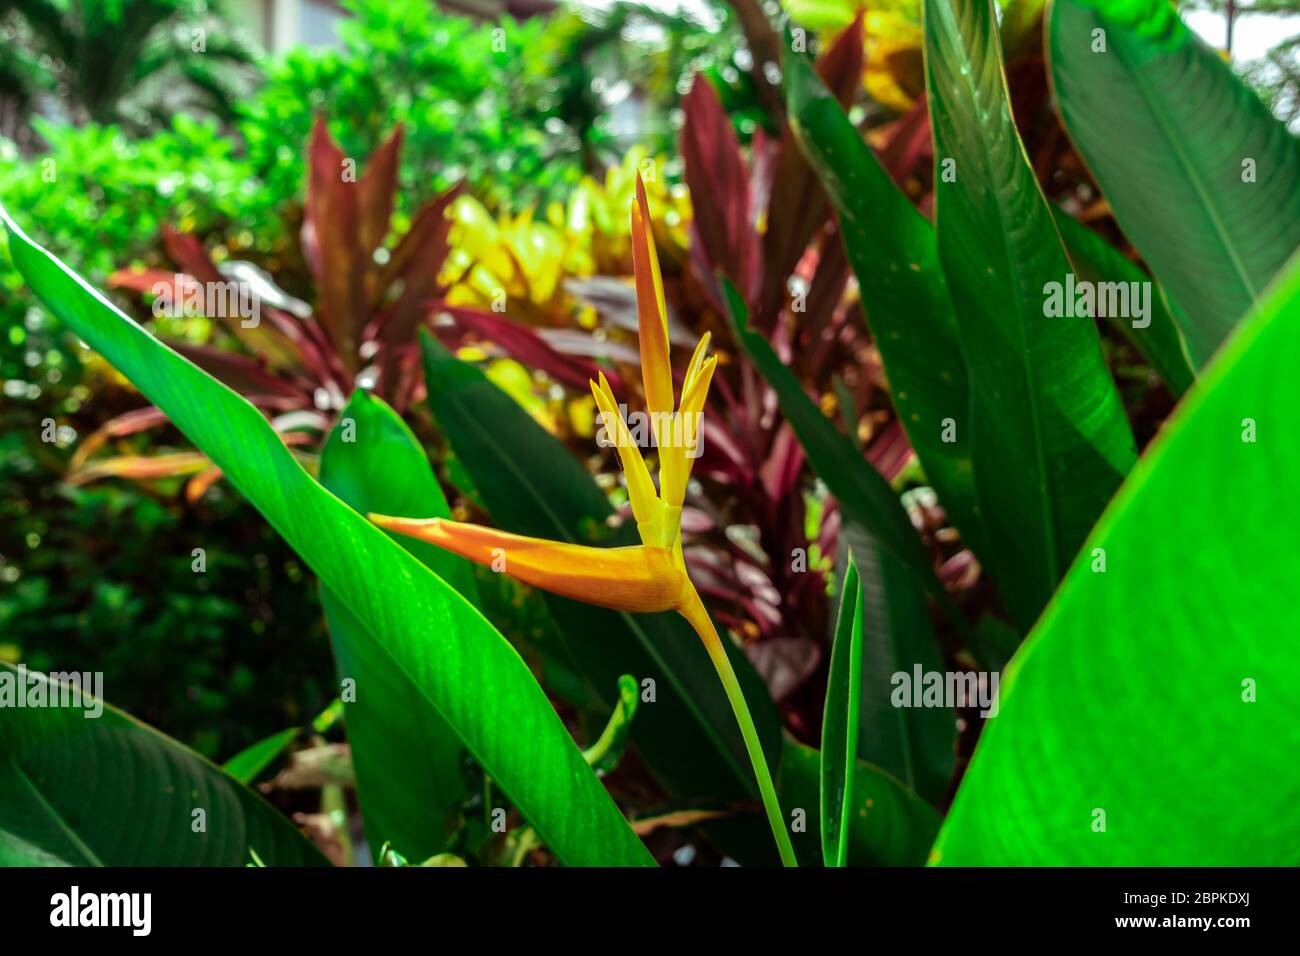 Nahsicht auf eine gelbe junge Heliconia tropische Blume (Heliconia densiflora). Indonesien, Bali, tropischer Regenwald. Stockfoto